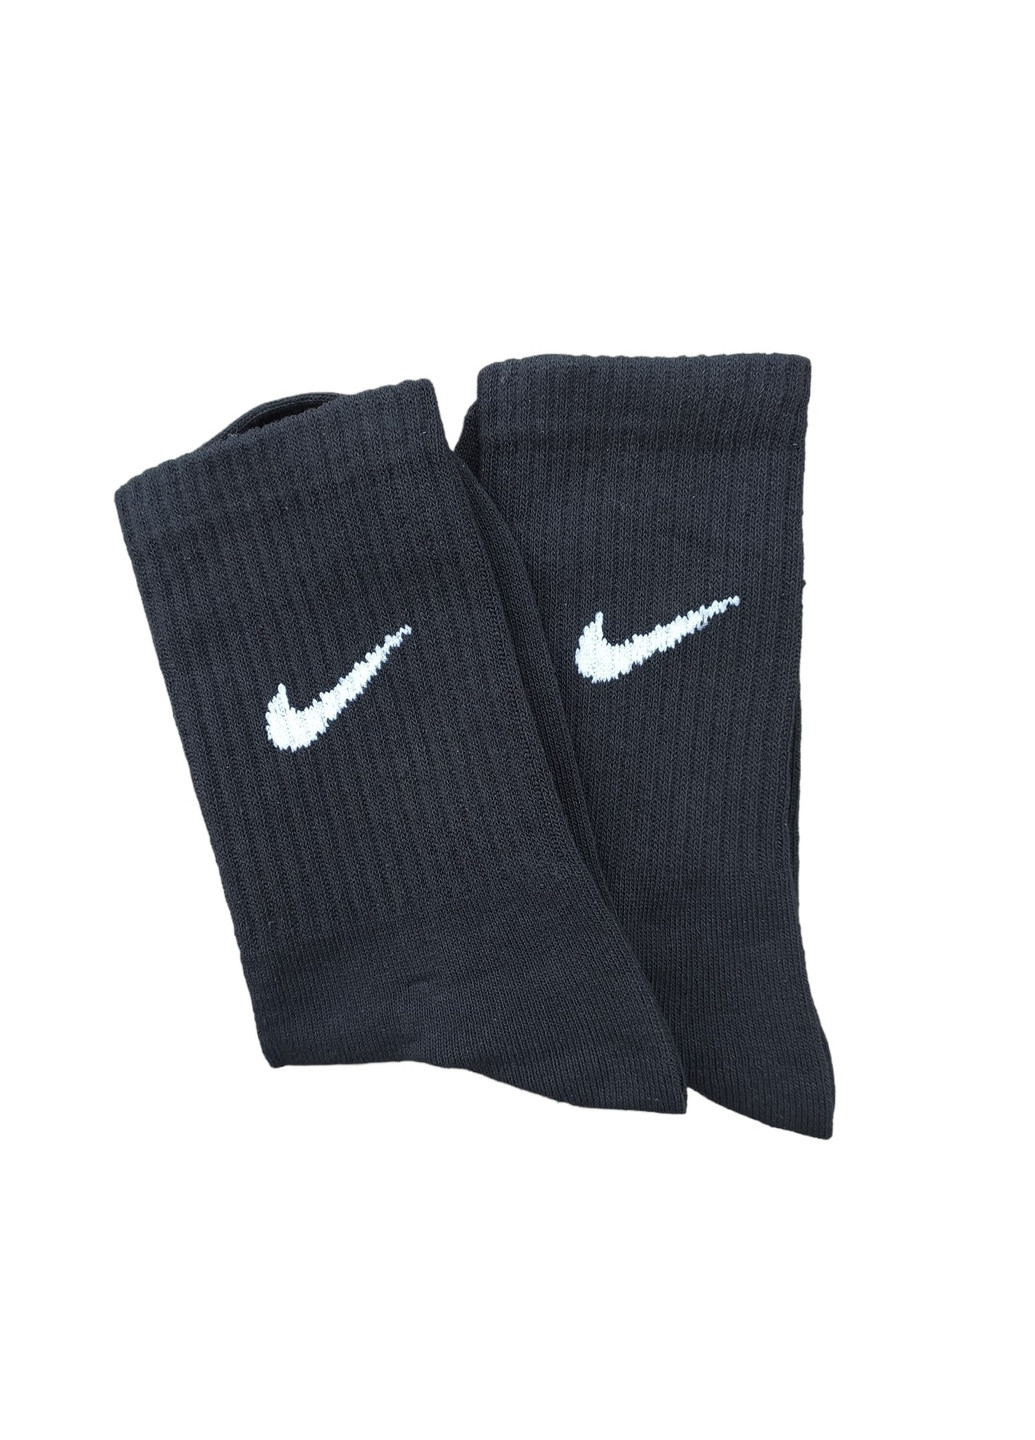 Высокие носки Nike No Brand (257689068)